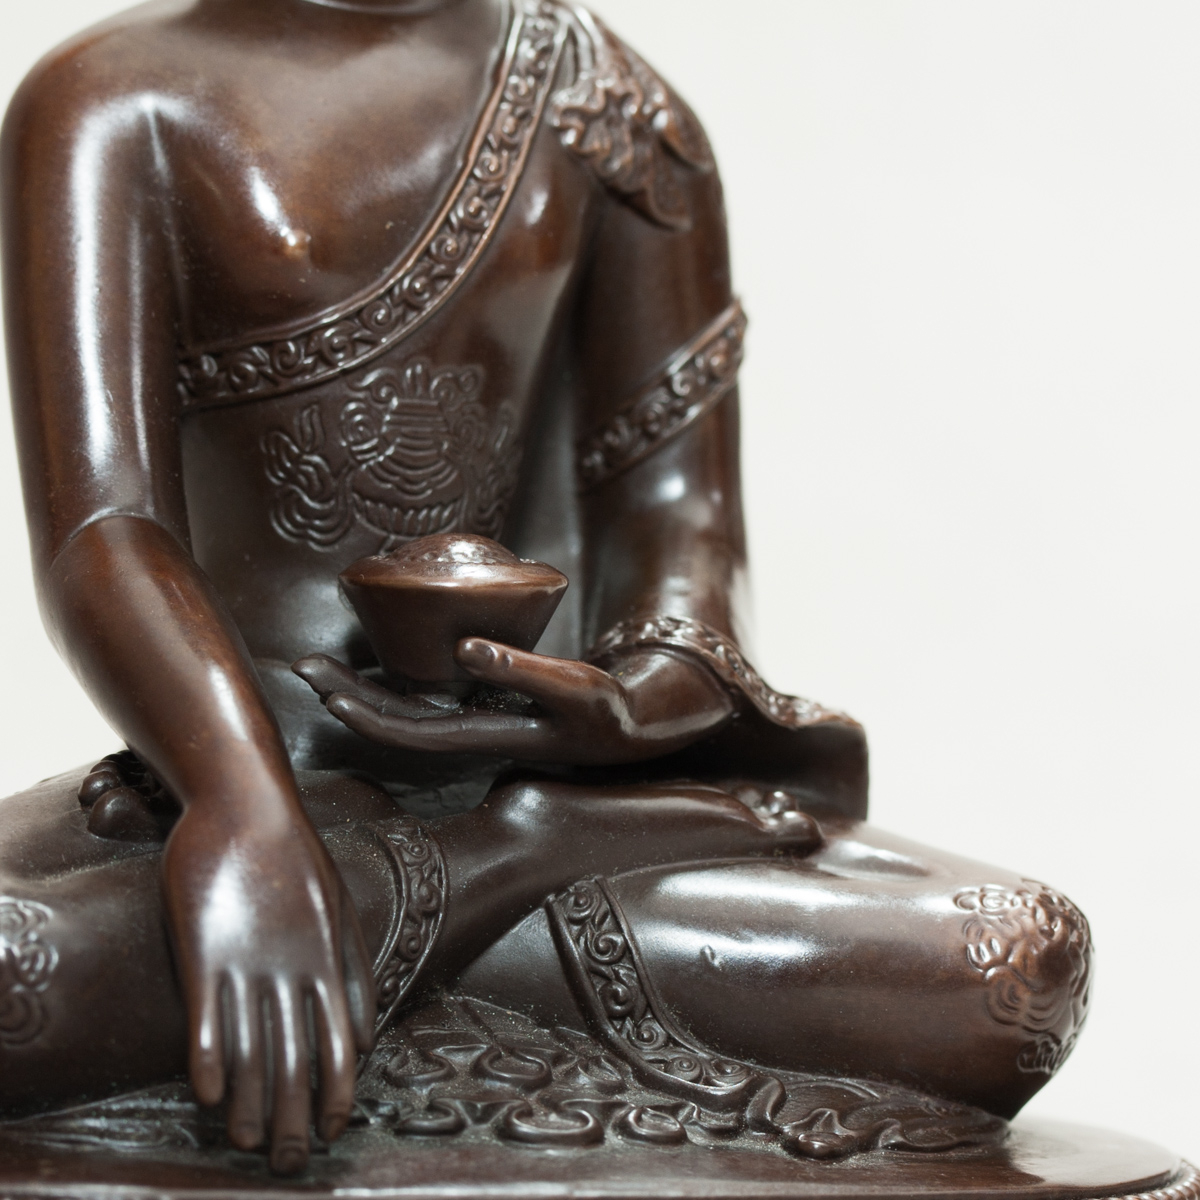 Статуэтка Будды Шакьямуни, 10 см